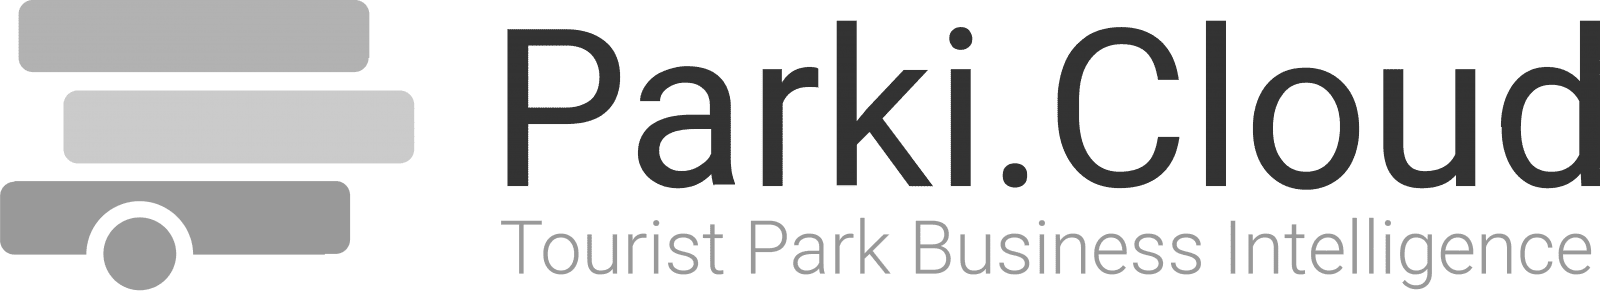 parki-logo-rounded